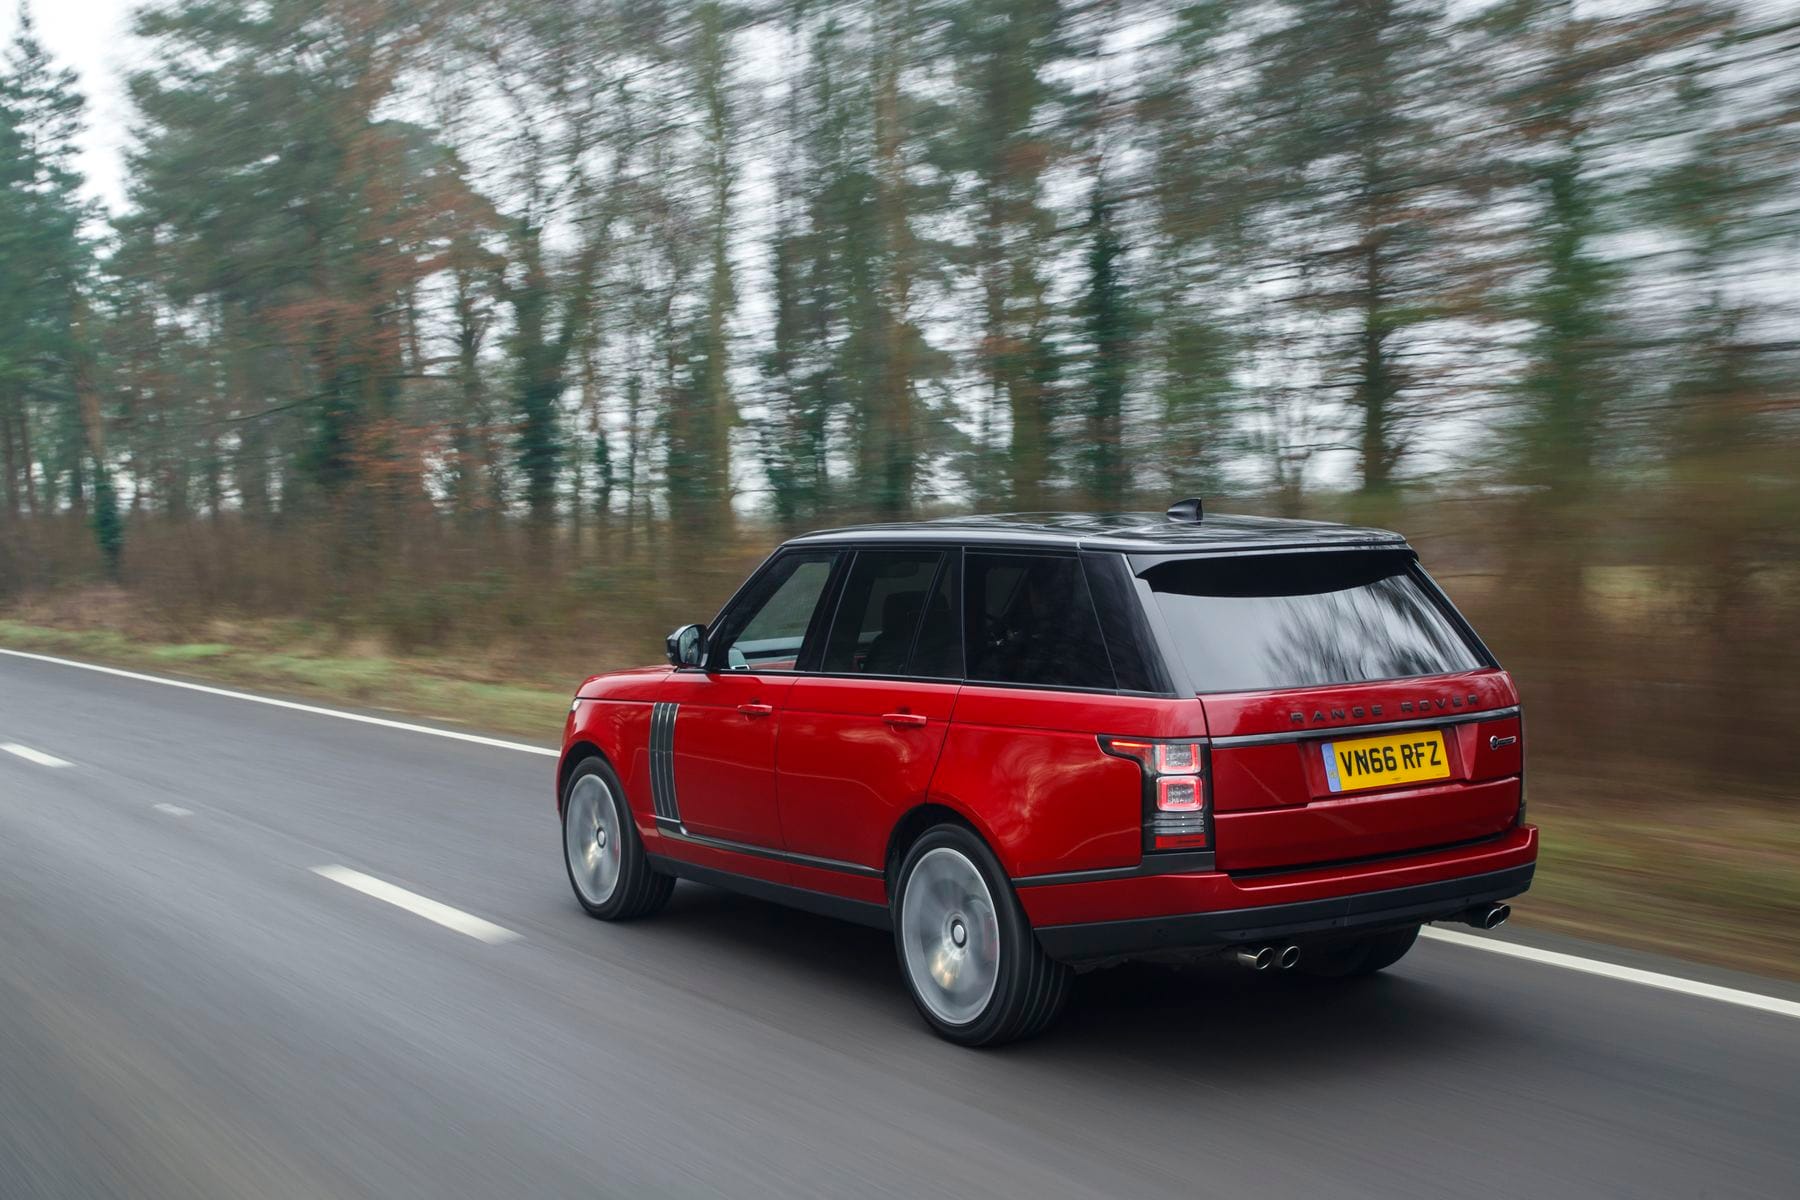 Der Range Rover Autobiography Dynamic stellt mit seinen vier glanzpolierten Auspuffendrohren seine Potenz ostentativ zur Schau.